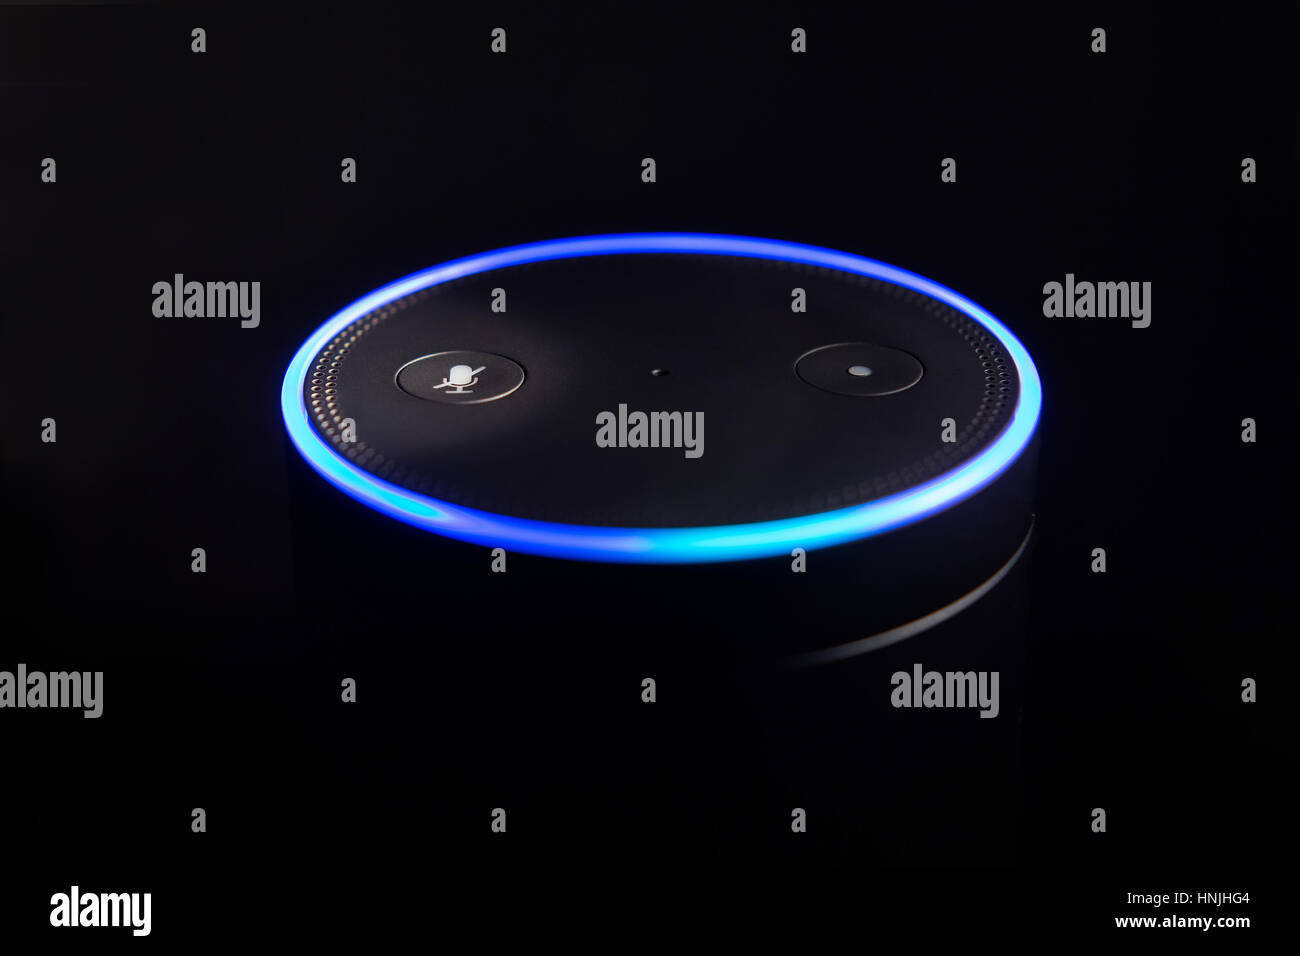 Amazon Echo système de reconnaissance vocale selective focus Photo Stock -  Alamy